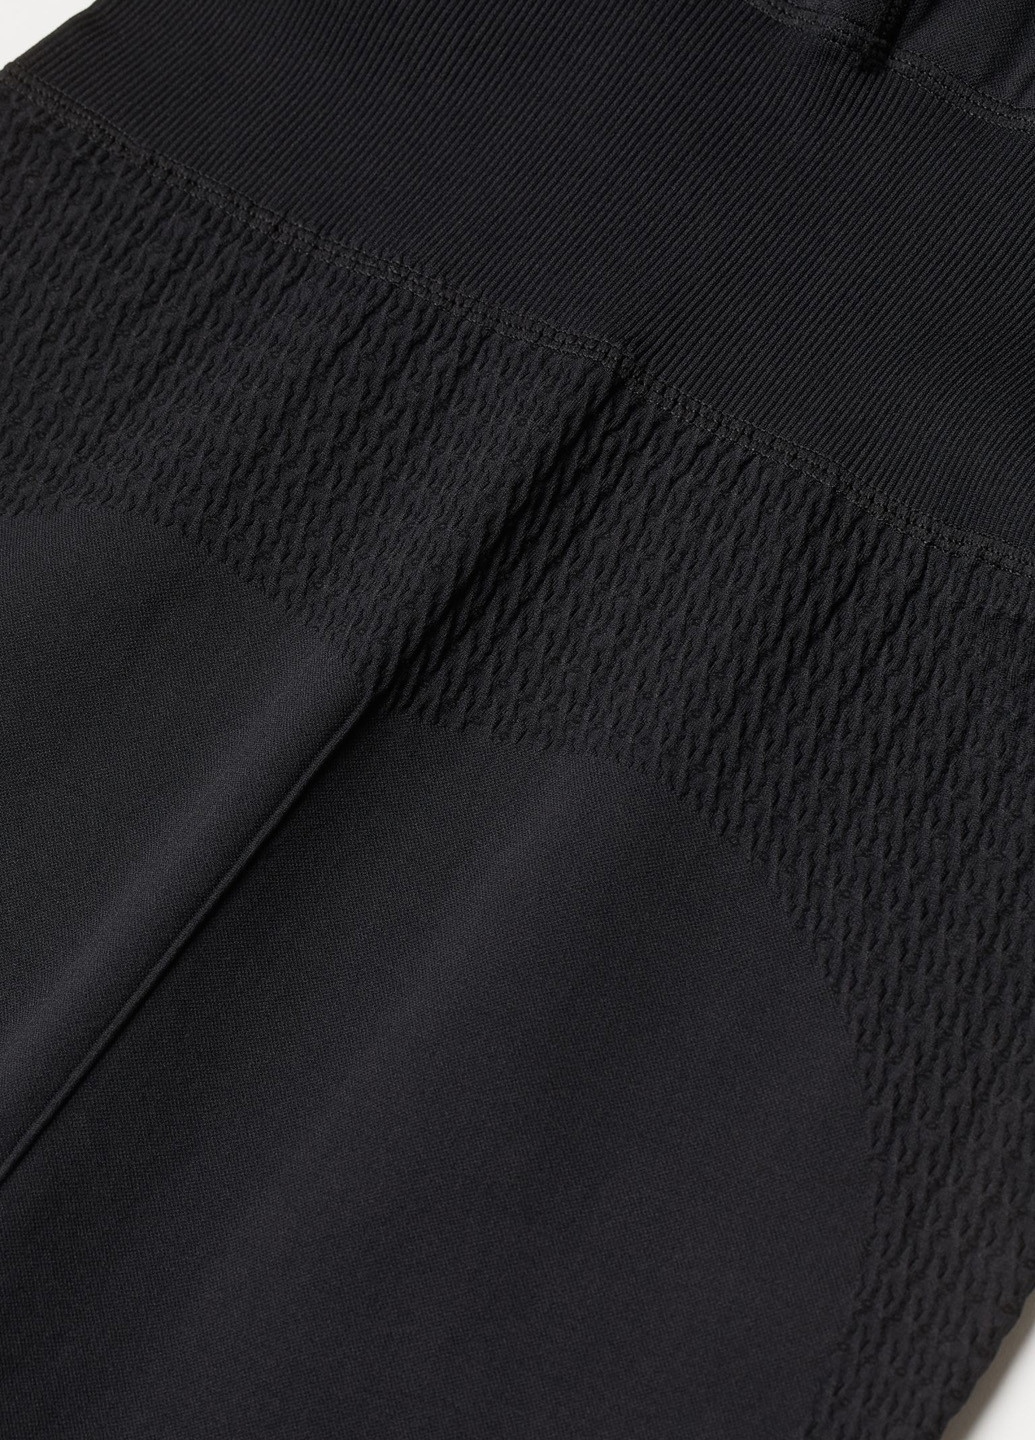 Комбинезон H&M комбинезон-брюки однотонный чёрный спортивный полиамид, трикотаж